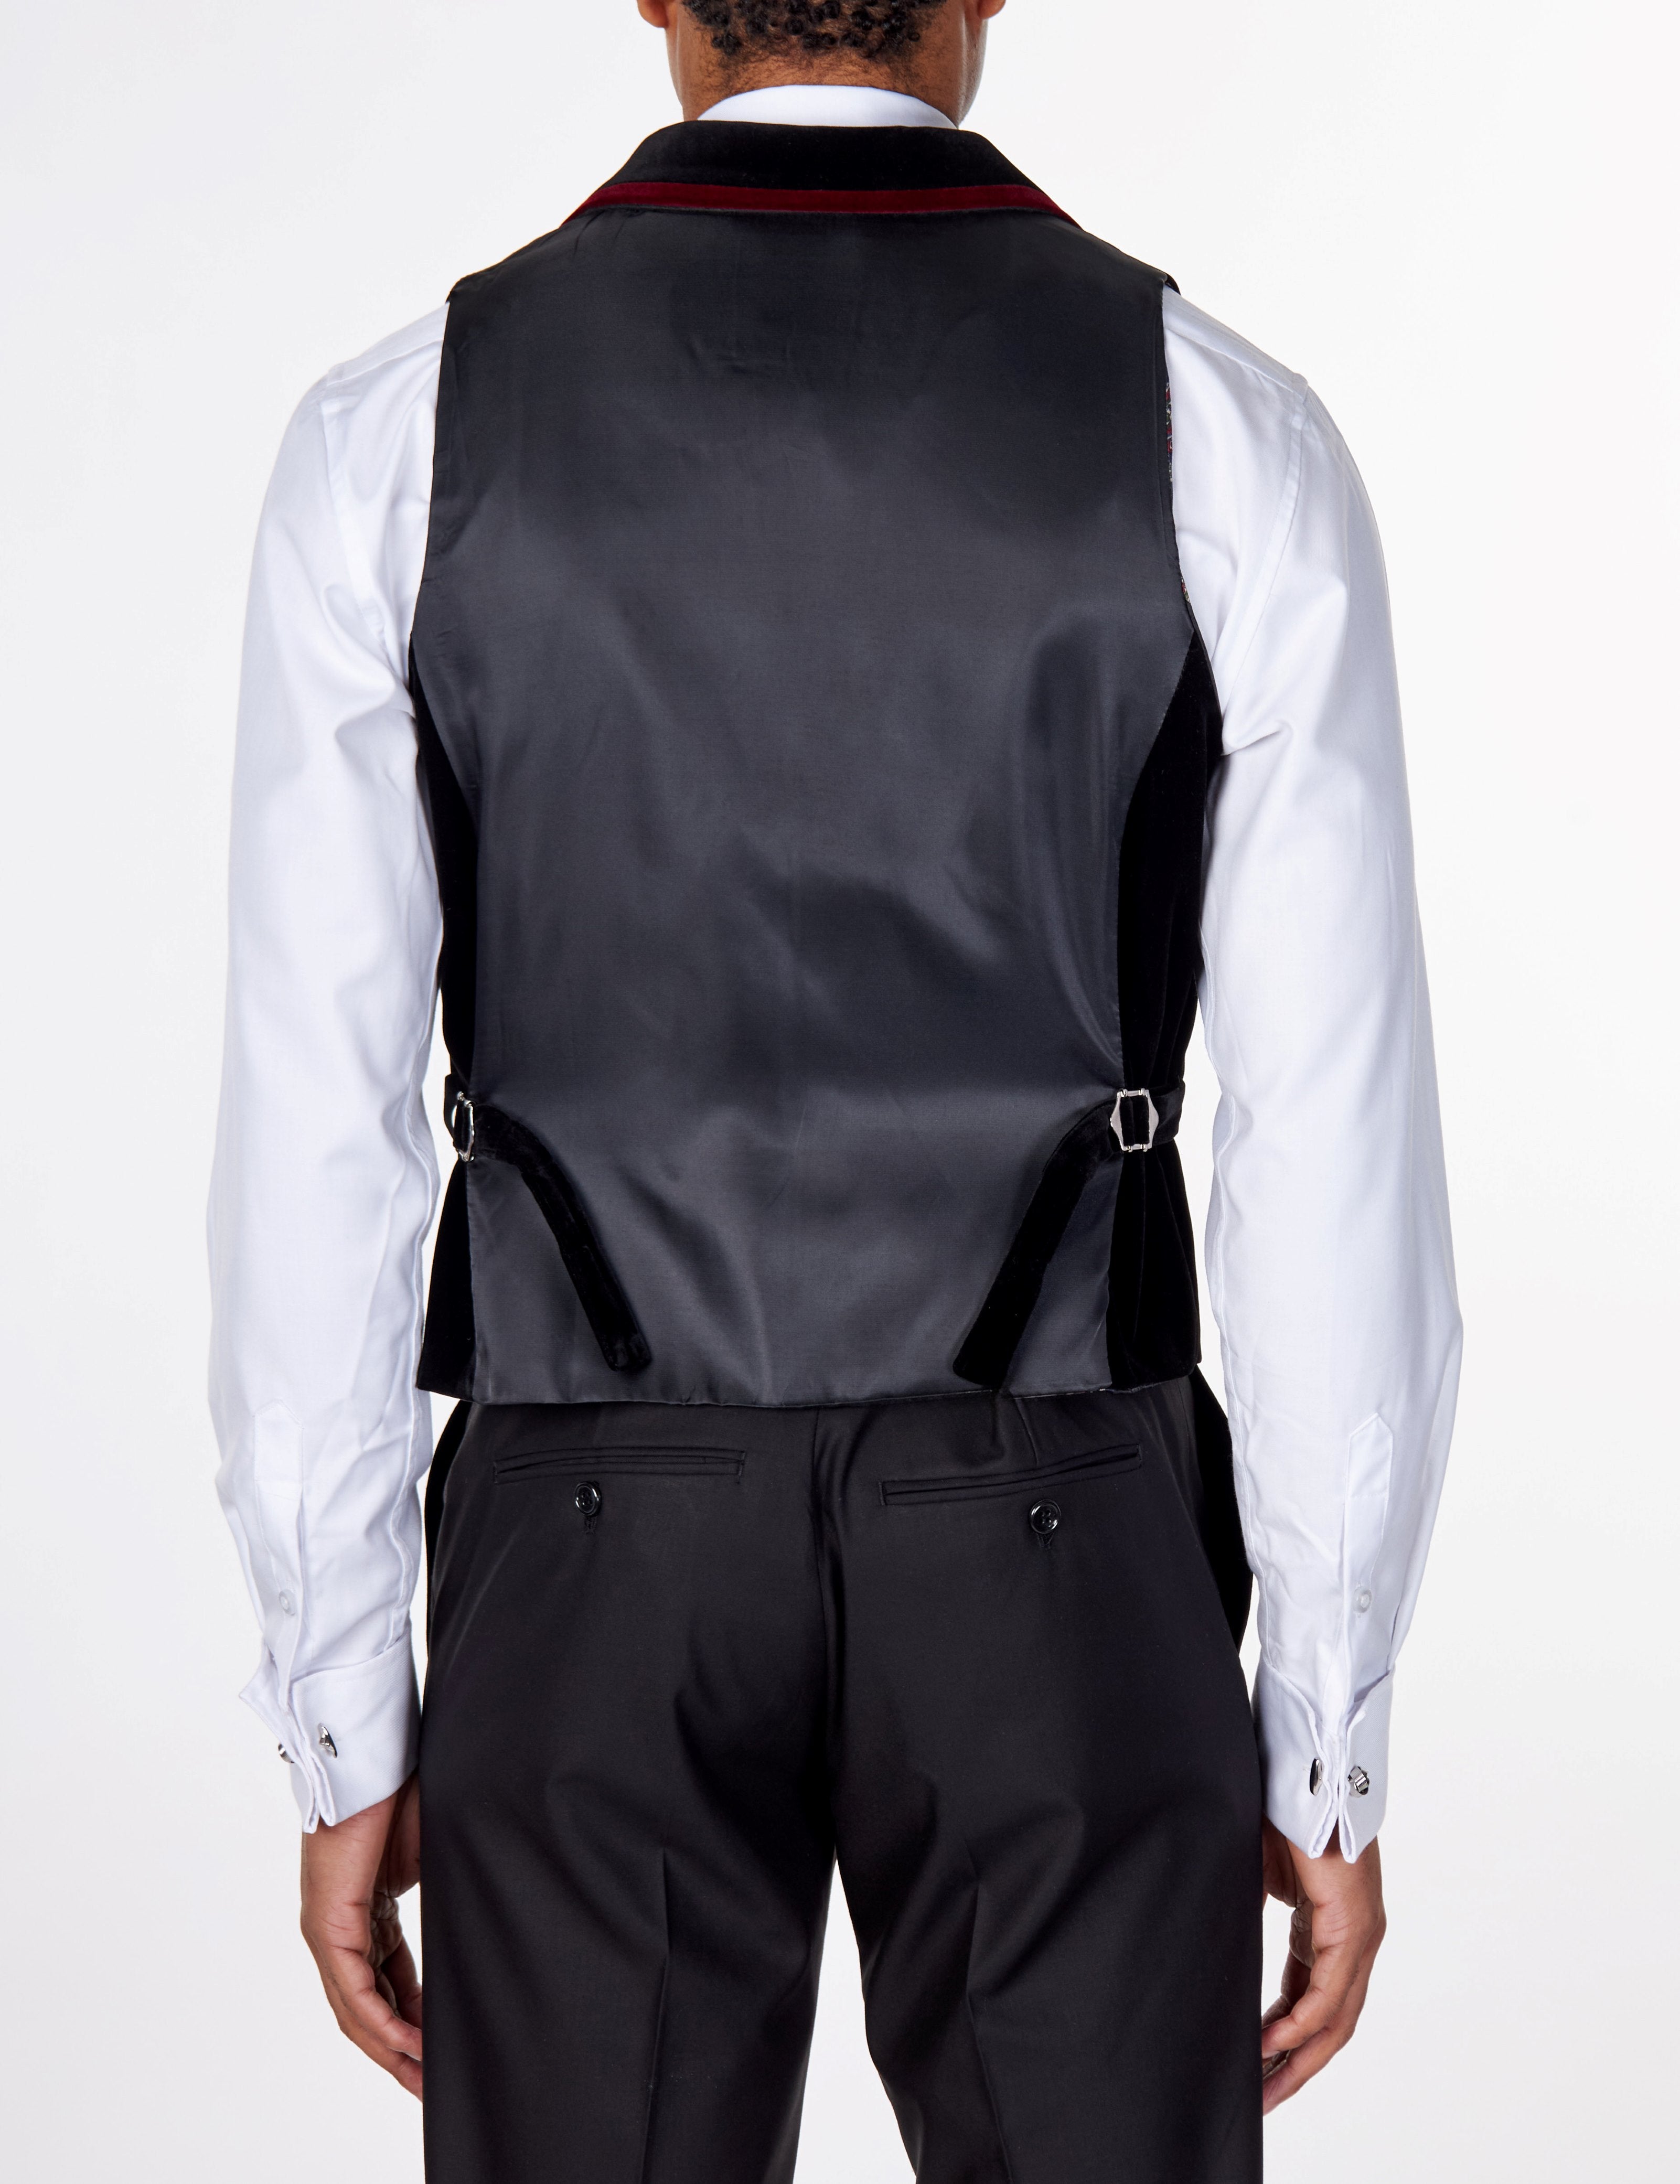 TIM Black Velvet Collar Waistcoat